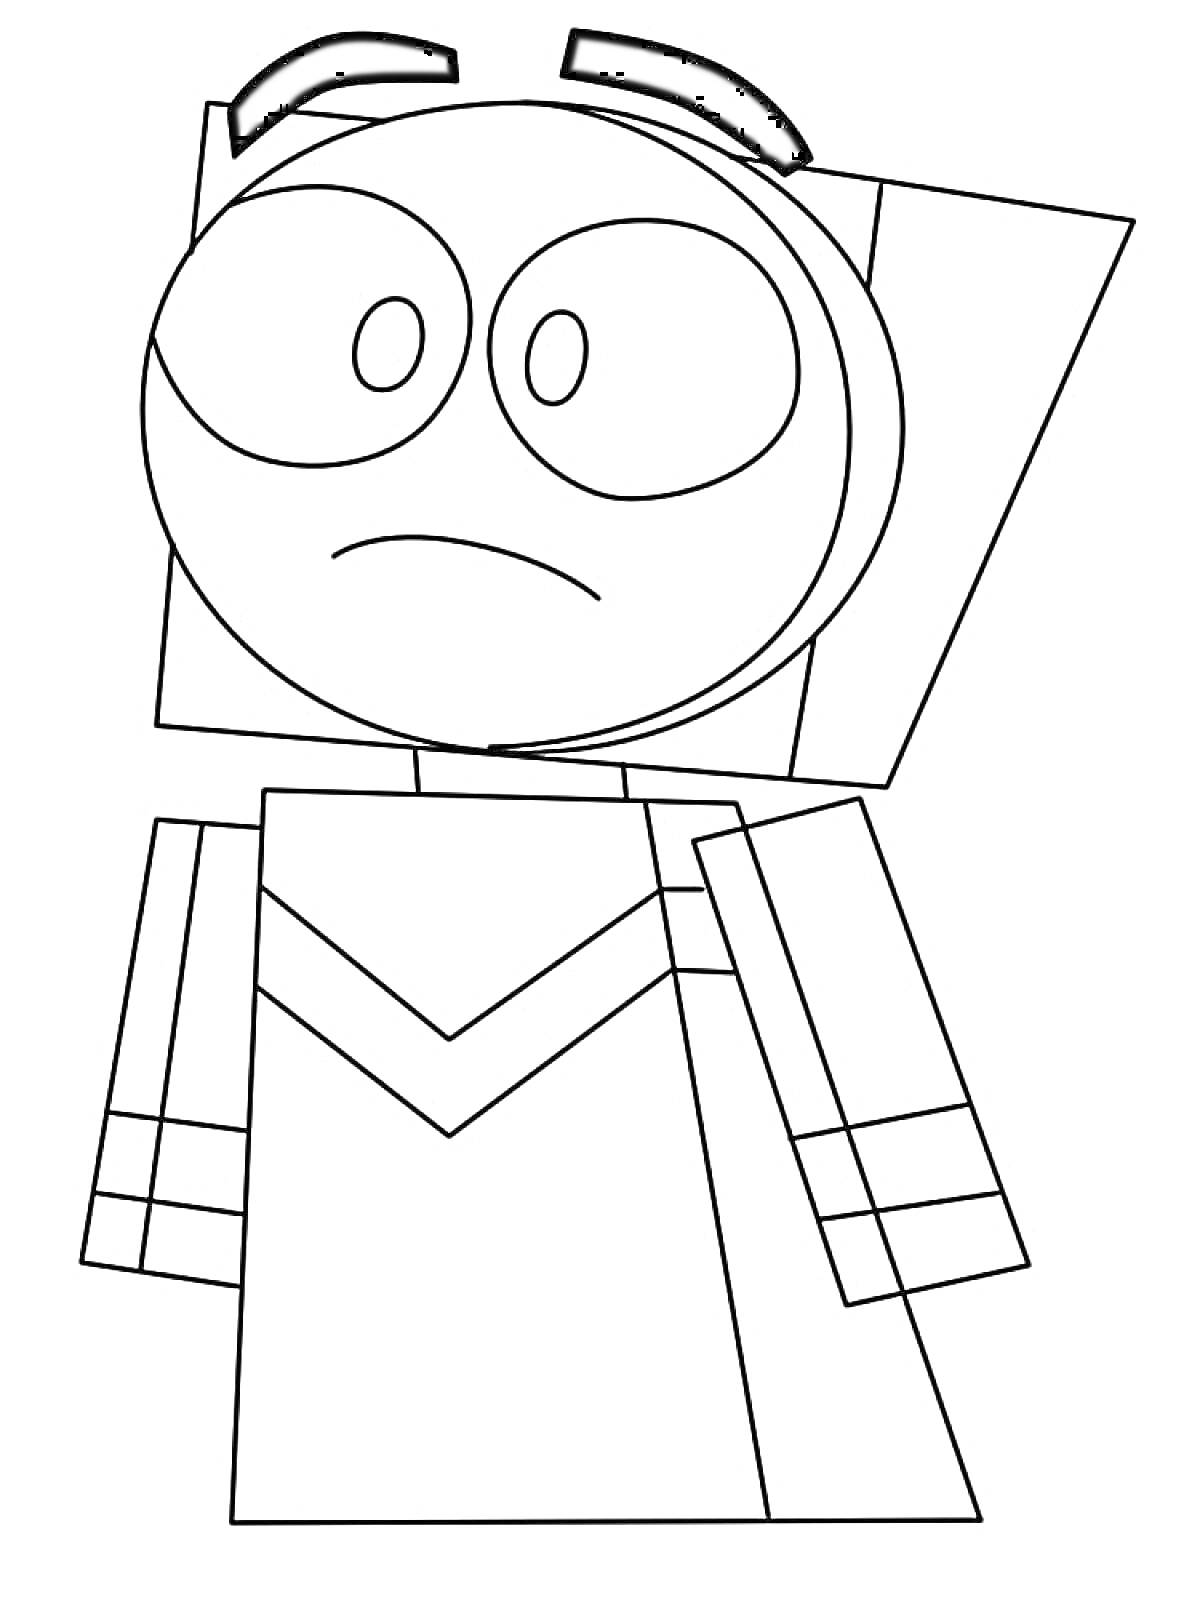 Грустная Юникитти в форме куба с ушами и ленточками, в платье с узором в виде галочки на груди.